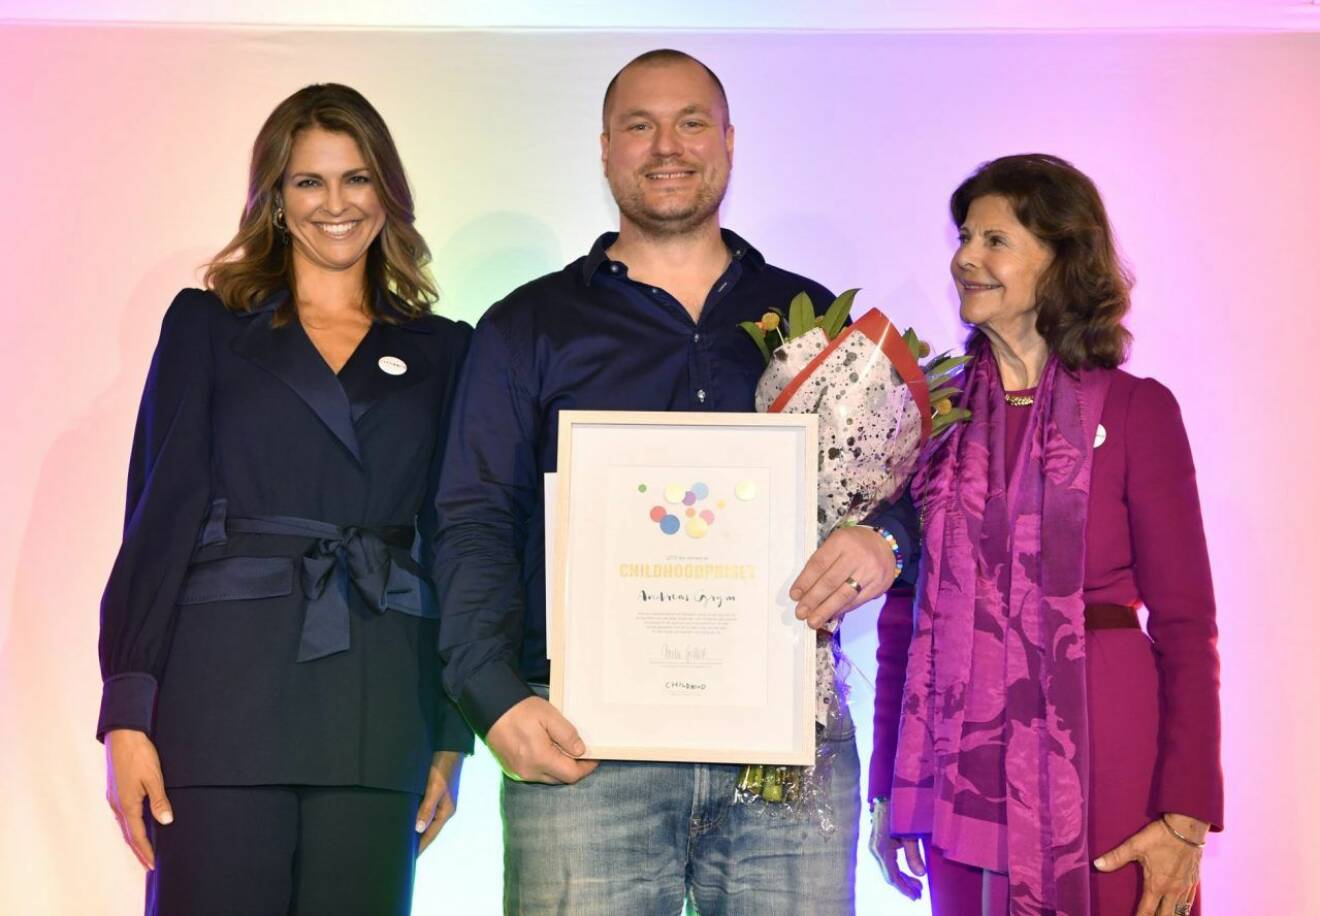 Prinsessan Madeleine och drottning Silvia med årets vinnare av Childhood-priset, Andreas Grym. 